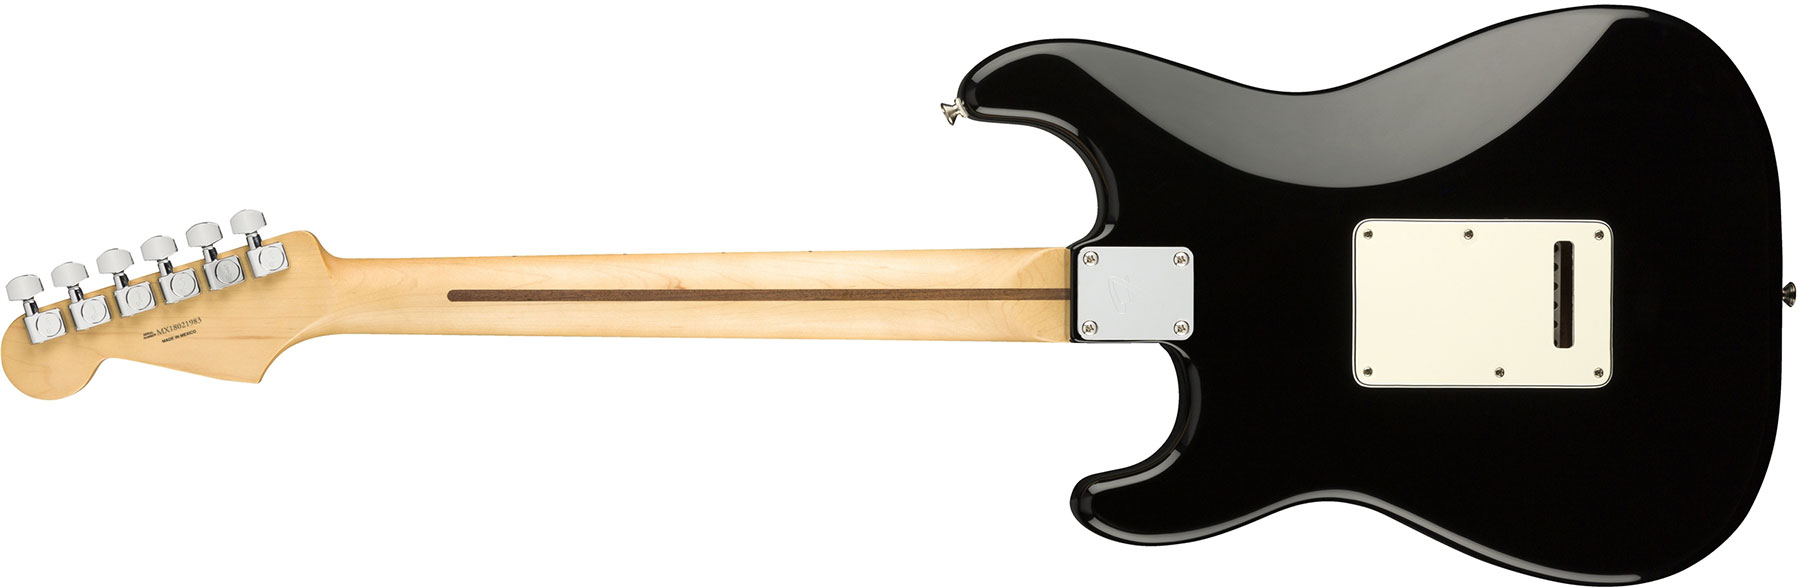 Fender Strat Player Mex Hss Mn - Black - Elektrische gitaar in Str-vorm - Variation 1